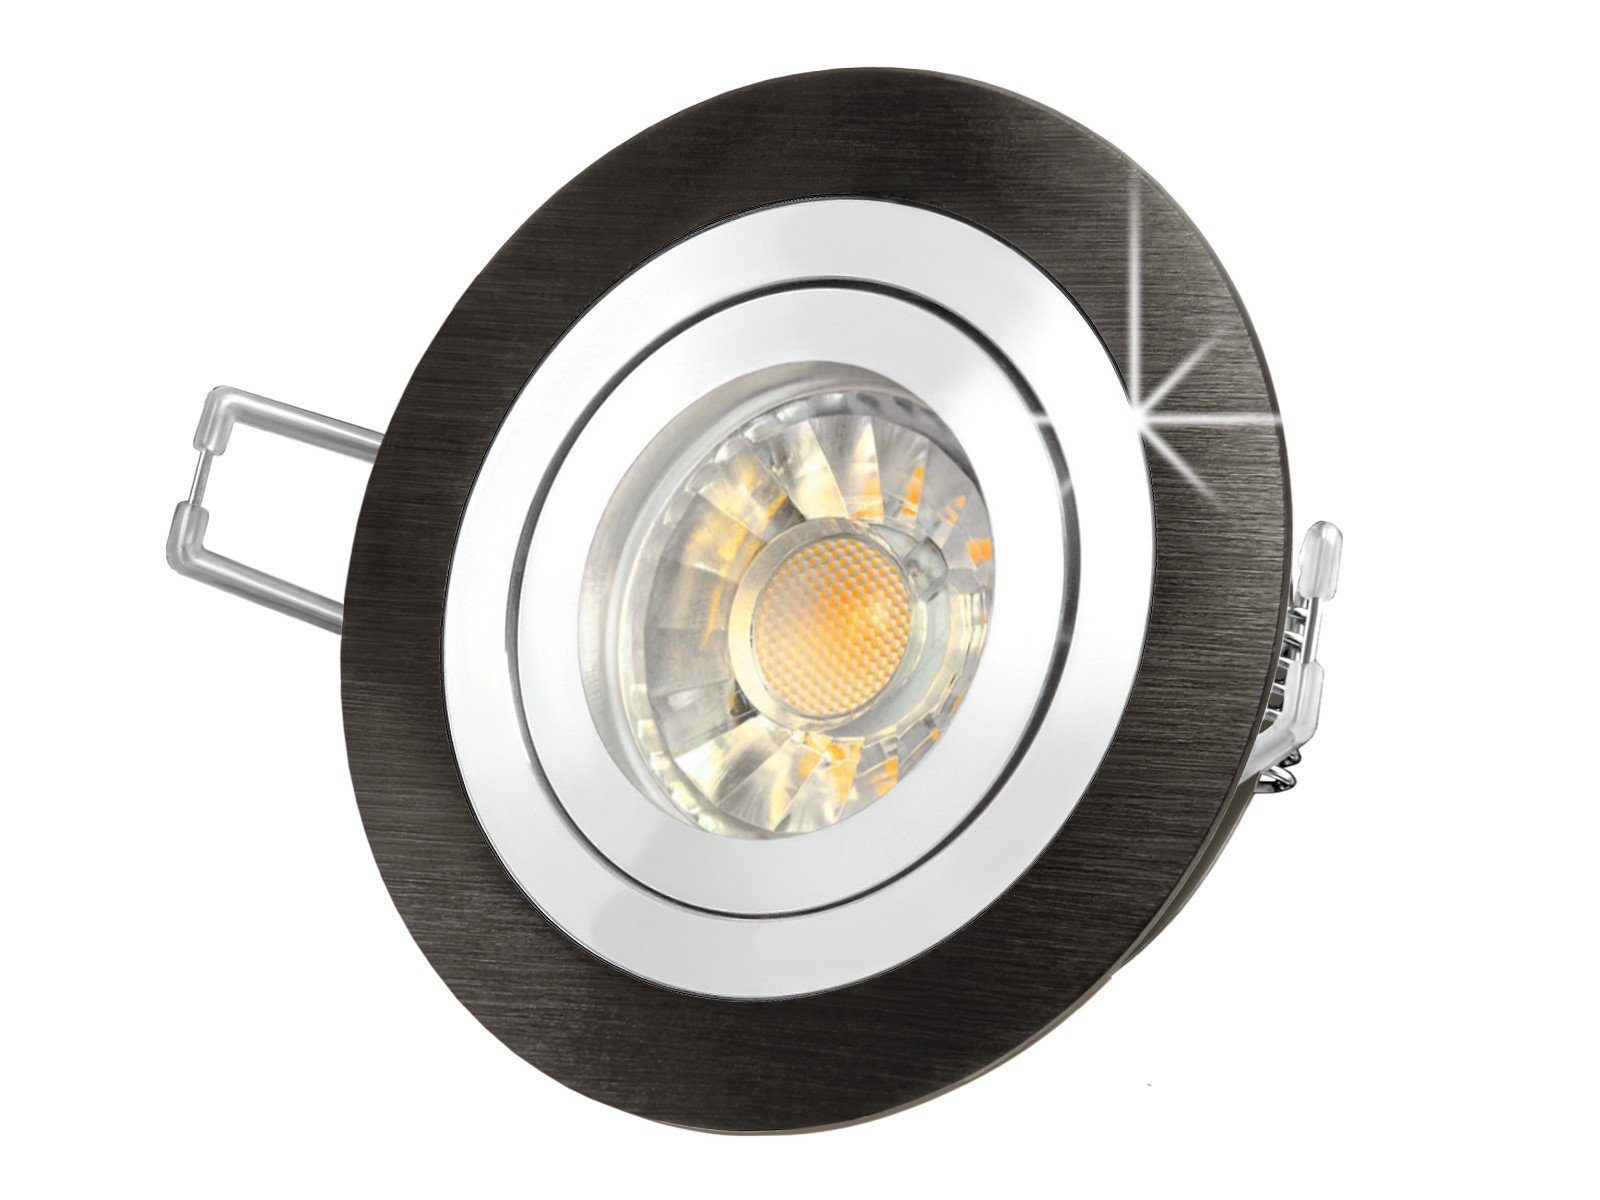 SSC-LUXon LED Einbaustrahler RF-2 LED-Einbaustrahler Leuchte rund Alu schwarz gebuerstet, 5W, Warmweiß